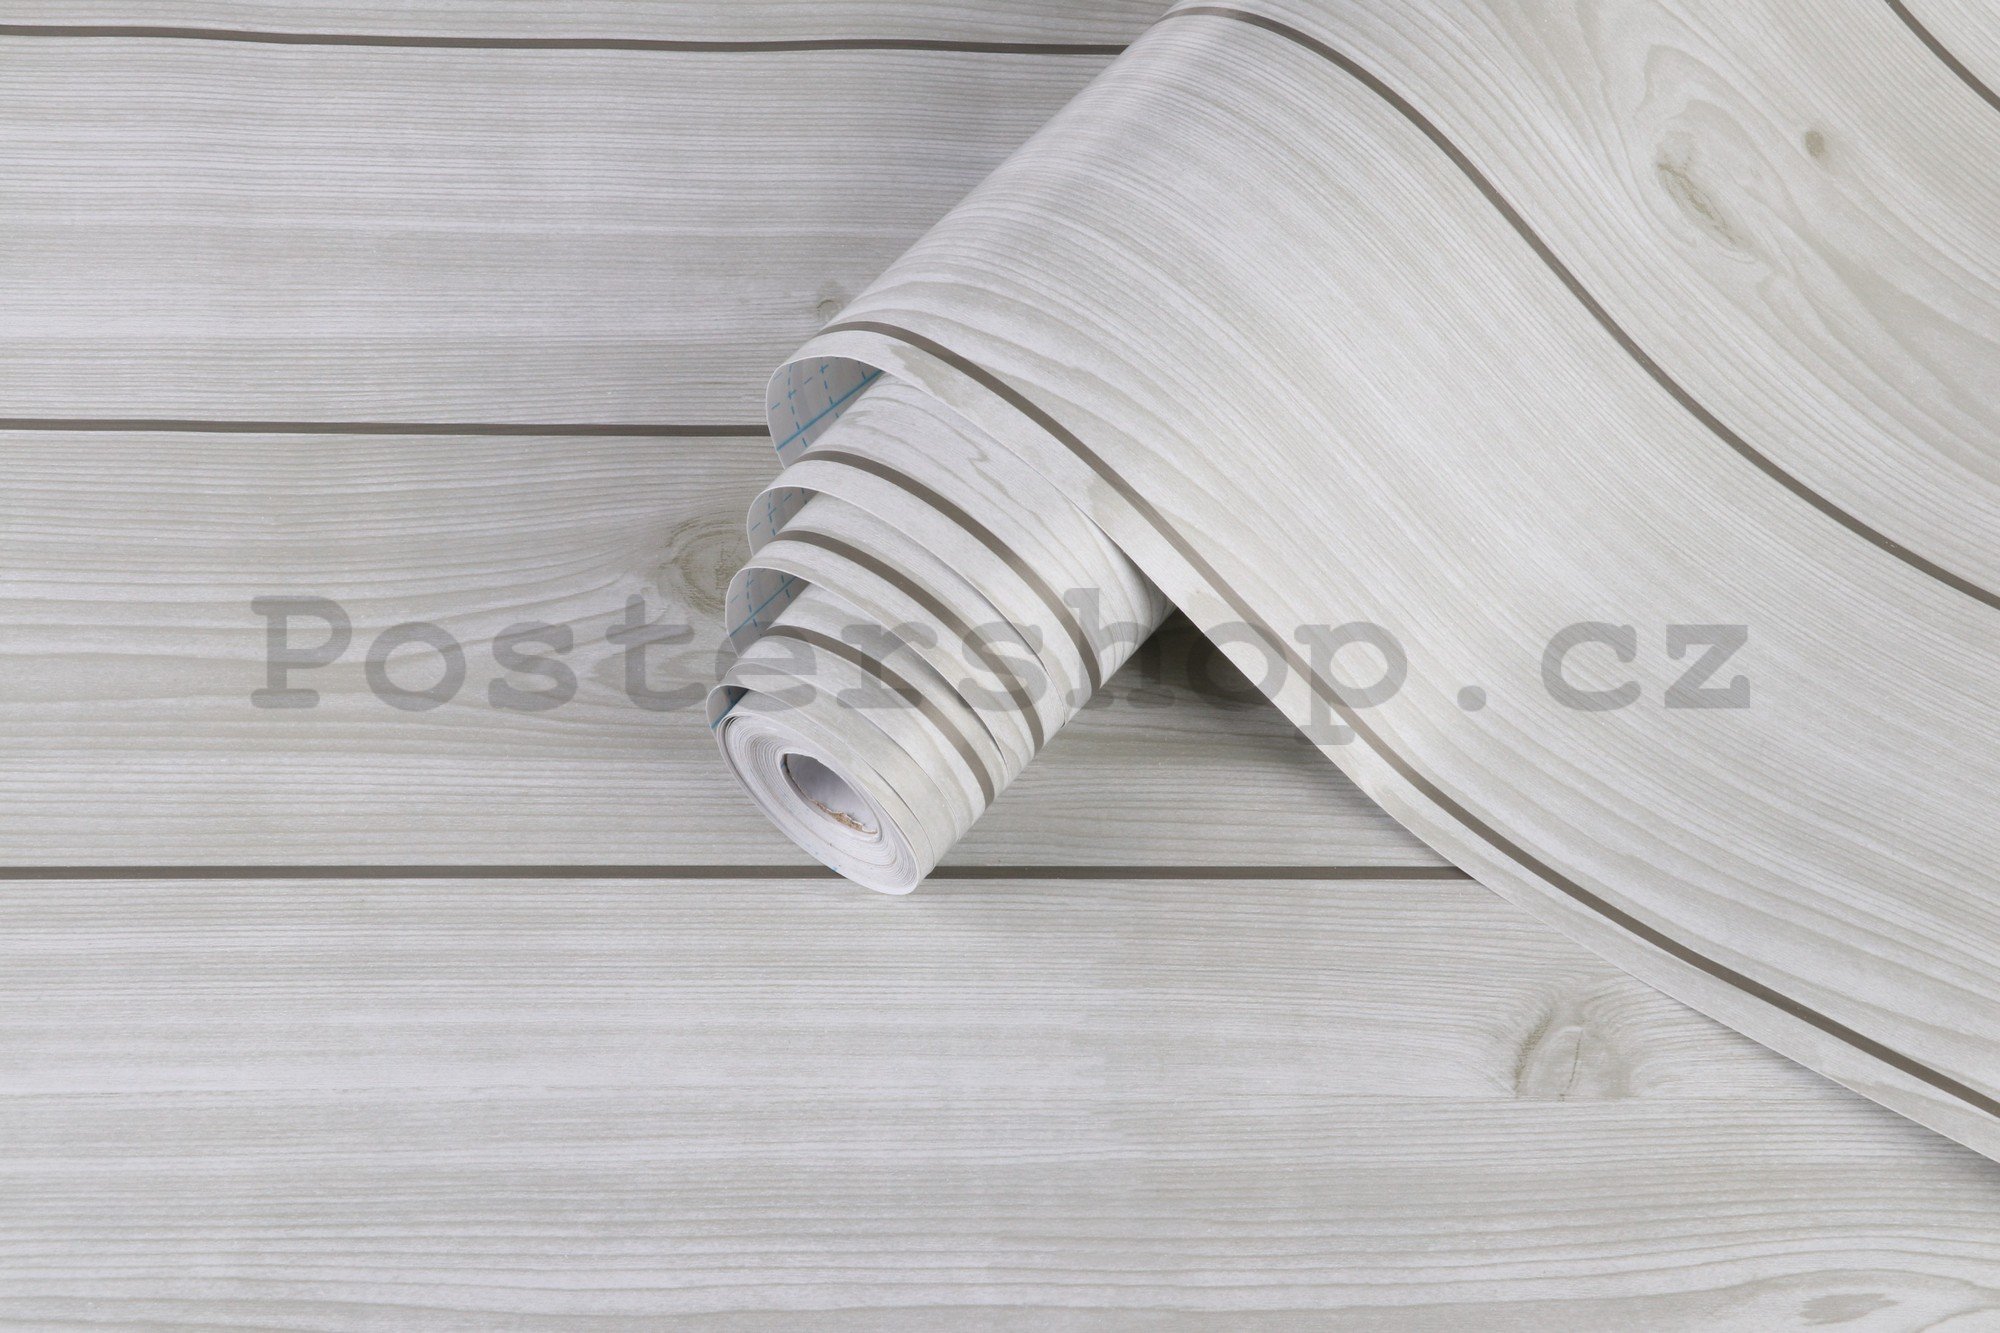 Samolepící fólie na nábytek bílé dřevěné prkna 45cm x 3m